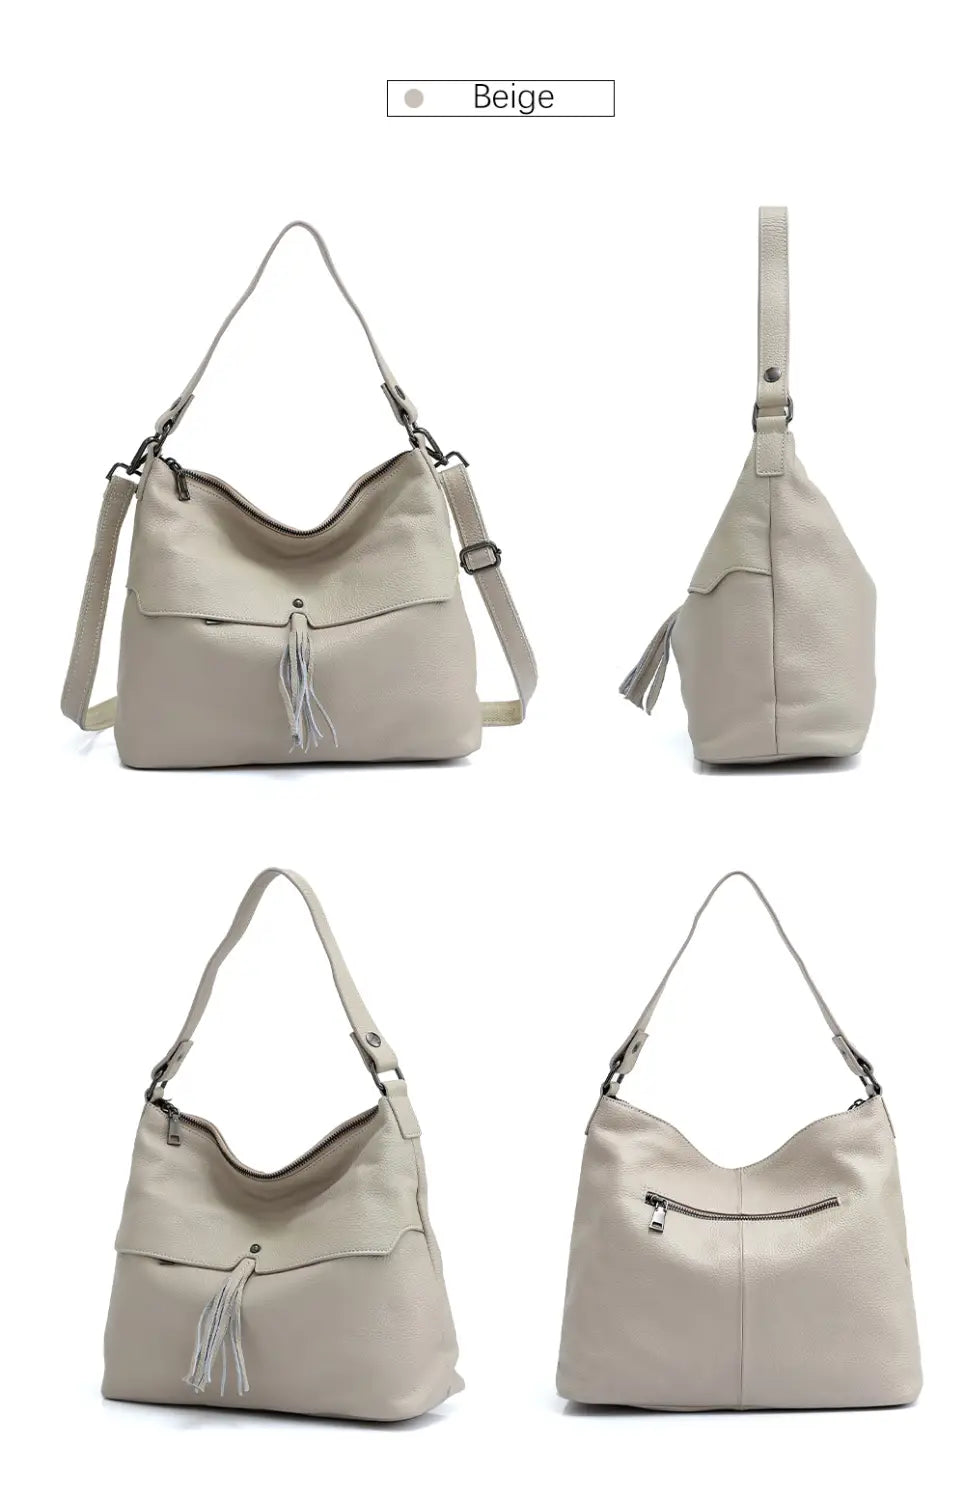 Versatile Genuine Leather Shoulder Bag in Five Stylish